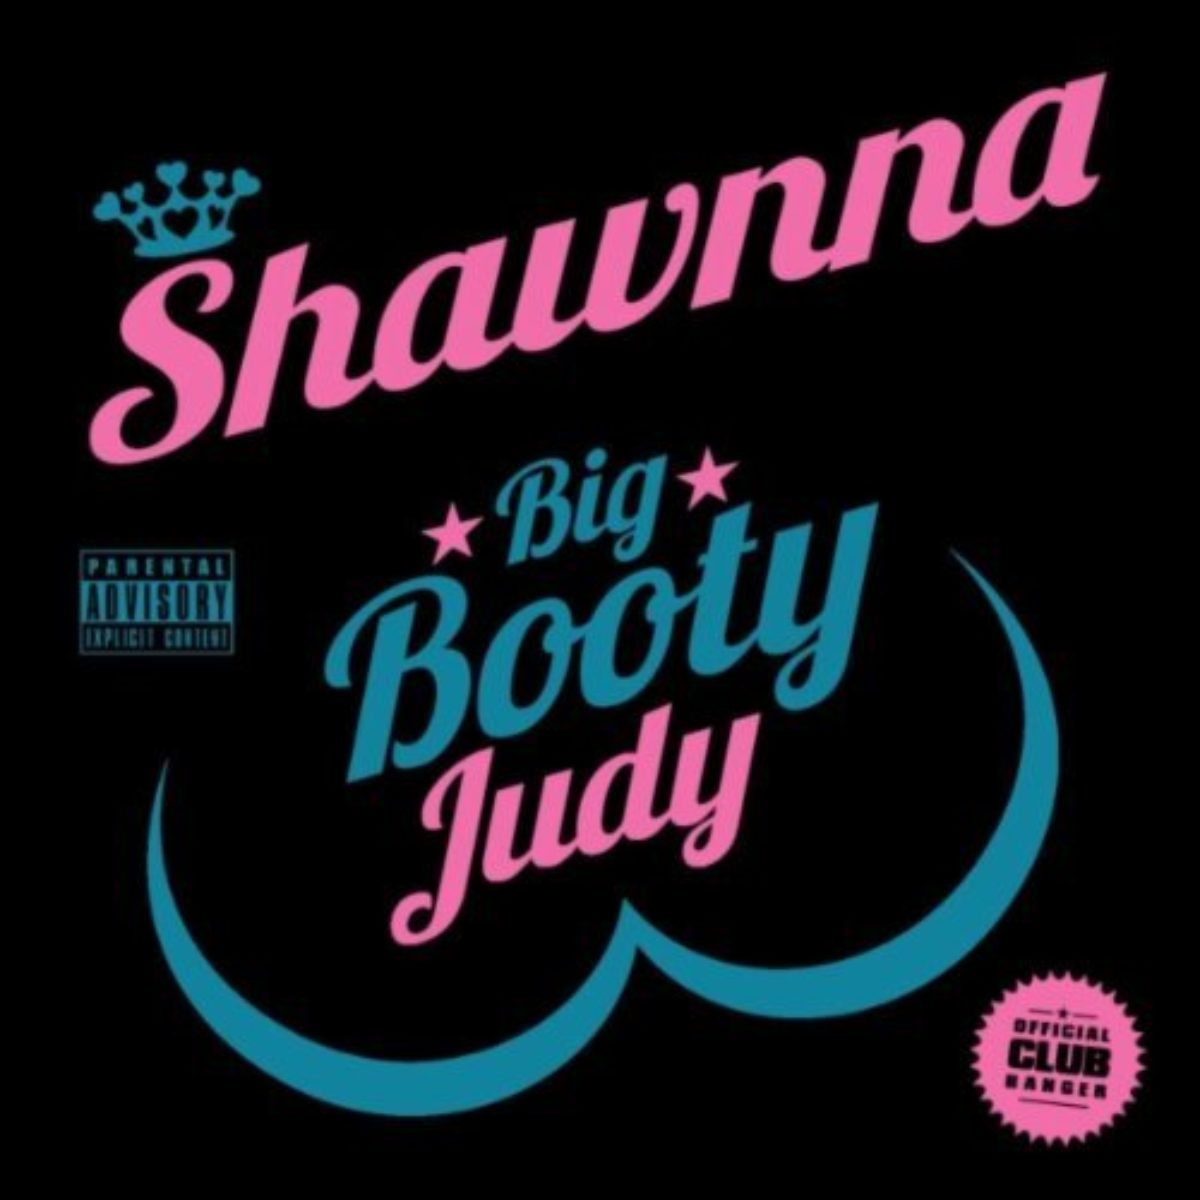 Shawnna booty